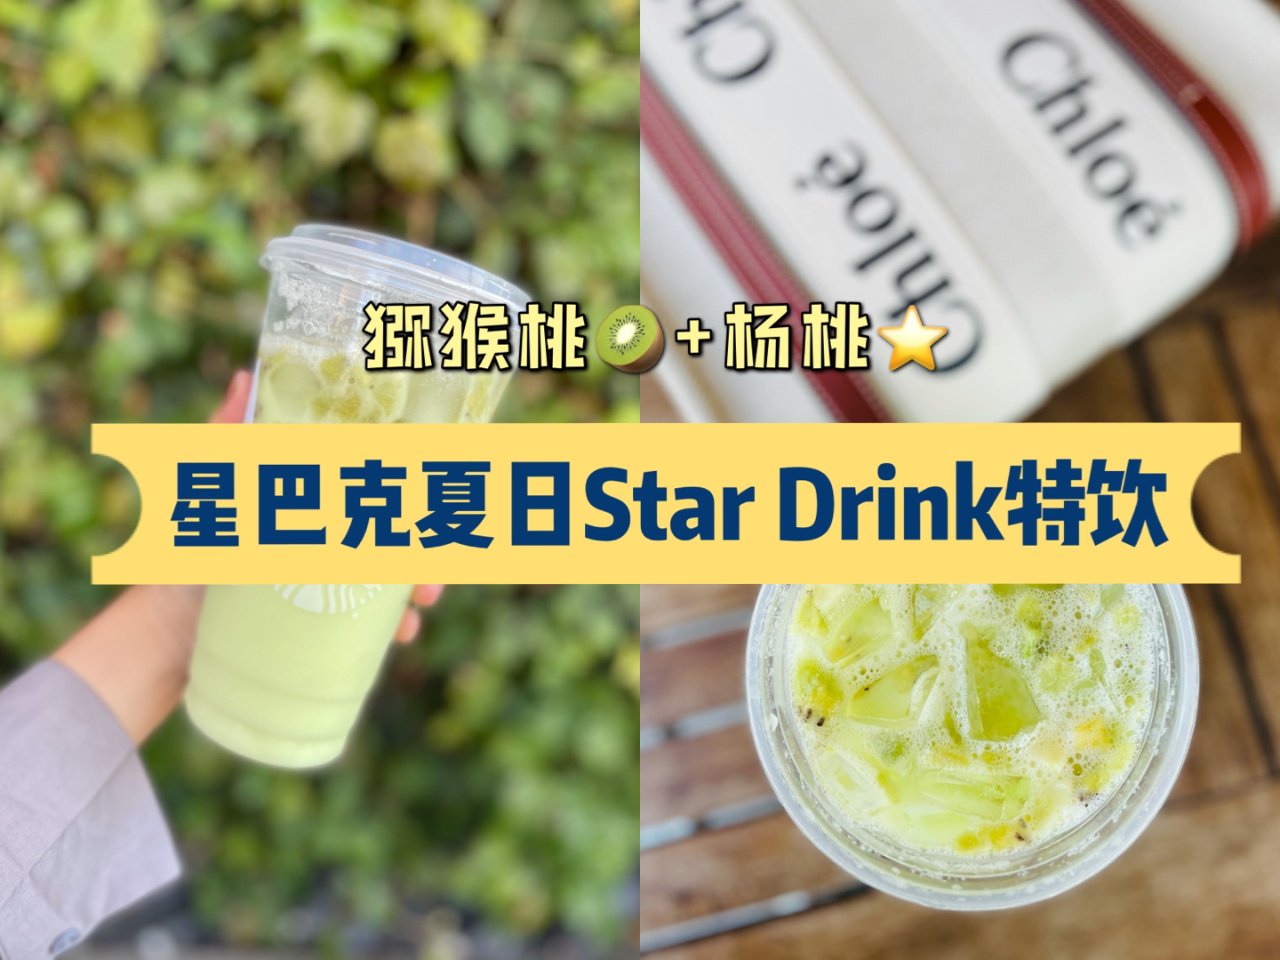 星巴克Star Drink猕猴桃🥝+杨桃...